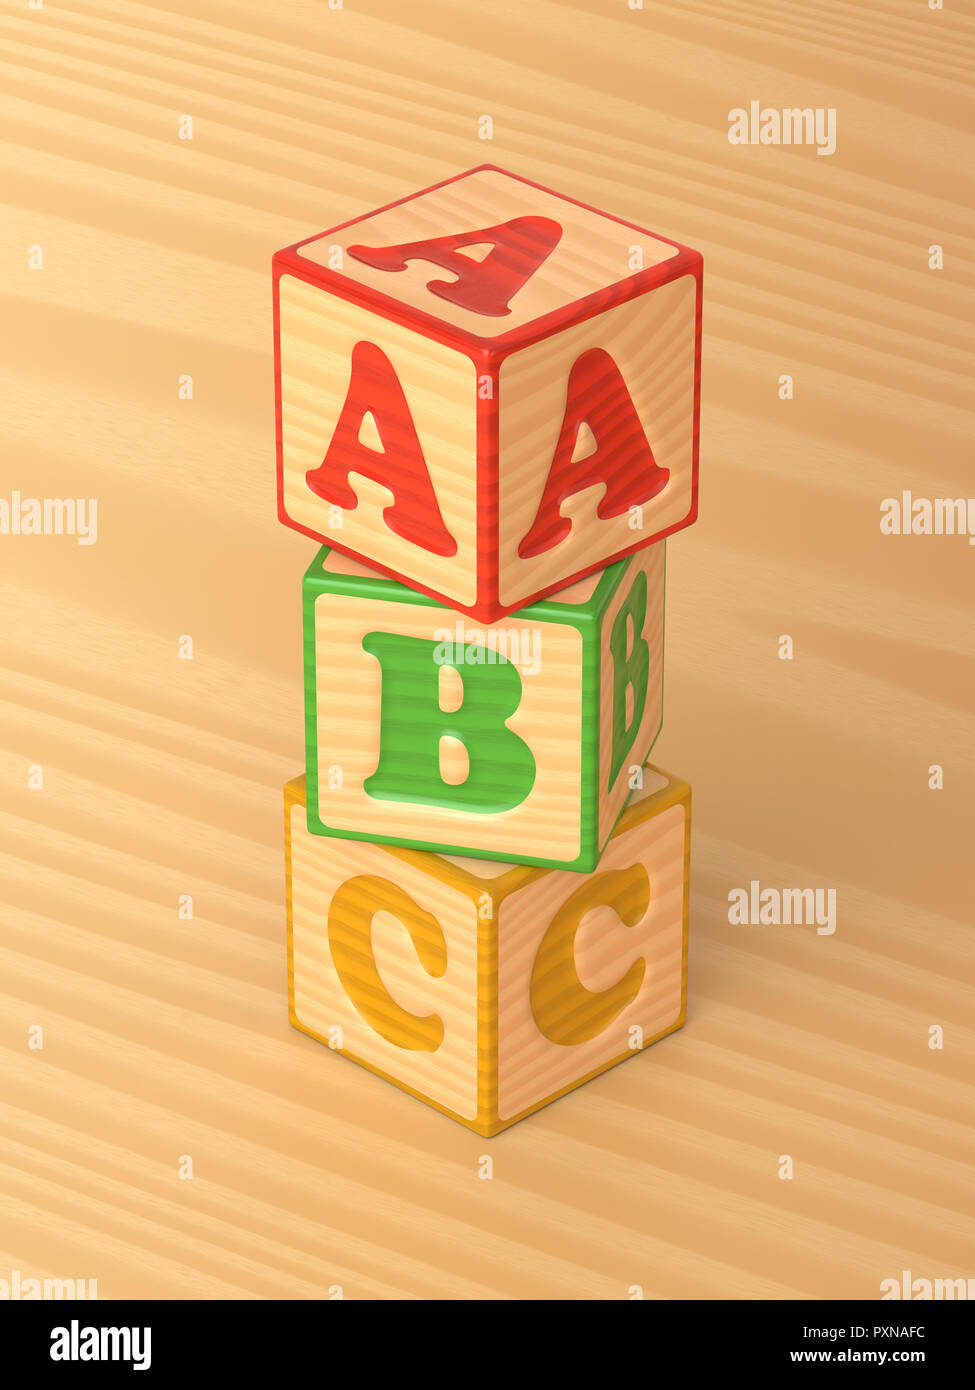 3D-gerenderte schräger Blick auf einen Stapel von Rot, Grün und Gelb Holzspielzeug alphabet Blöcke auf einem hellen Hintergrund. Stockfoto